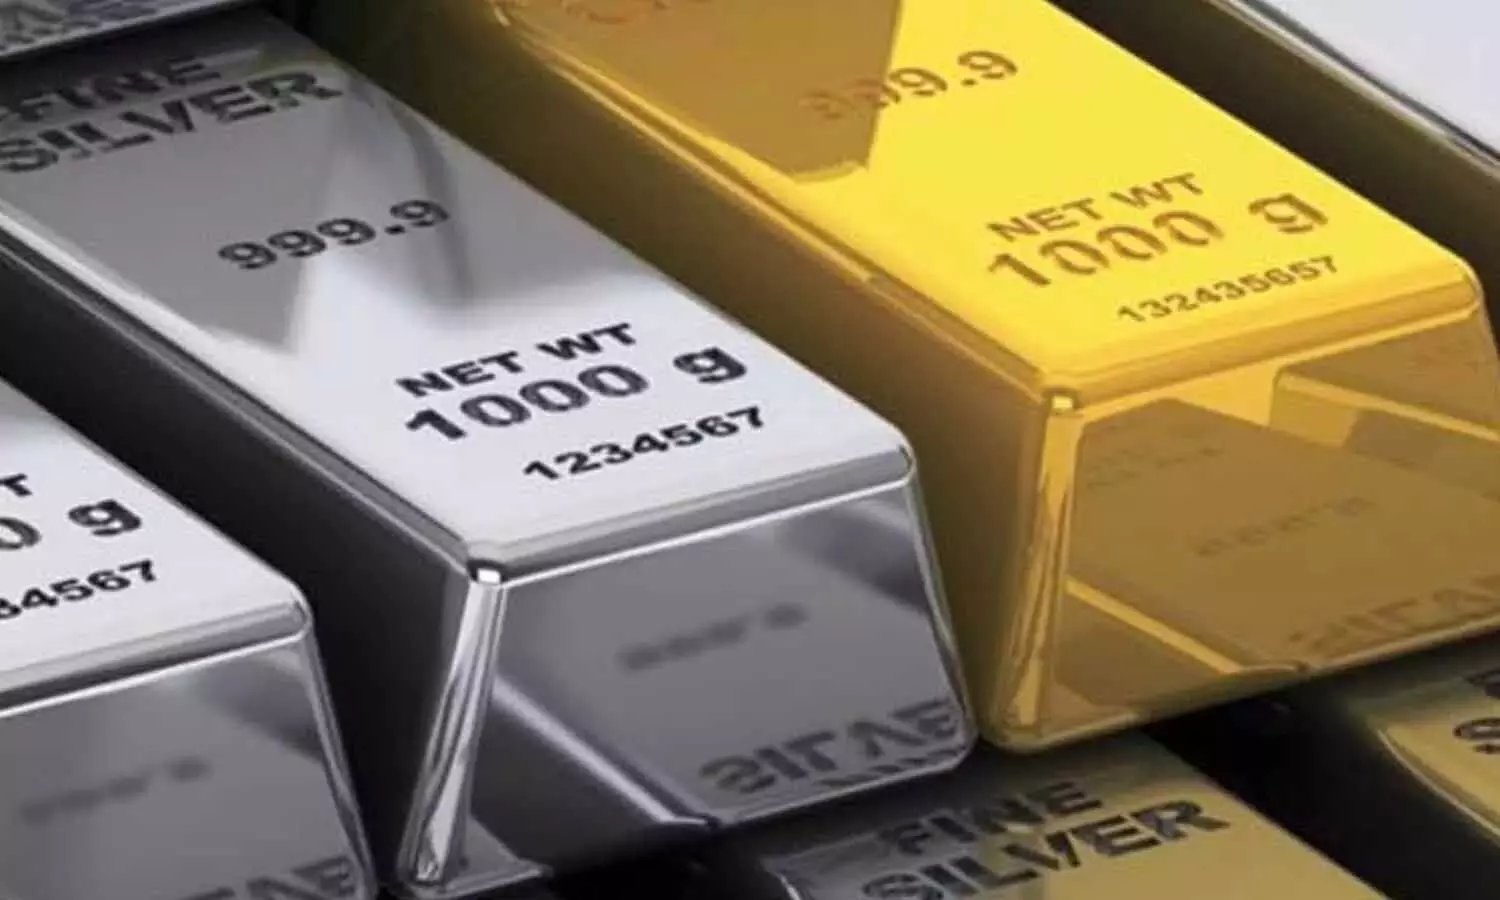 Gold Silver Rate Today: सोना 1080 रुपए प्रति 10 ग्राम बढ़ा, चांदी में रिकॉर्ड 4800 रुपए की वृद्धि, खरीदने से पहले चेक कर लें प्राइस